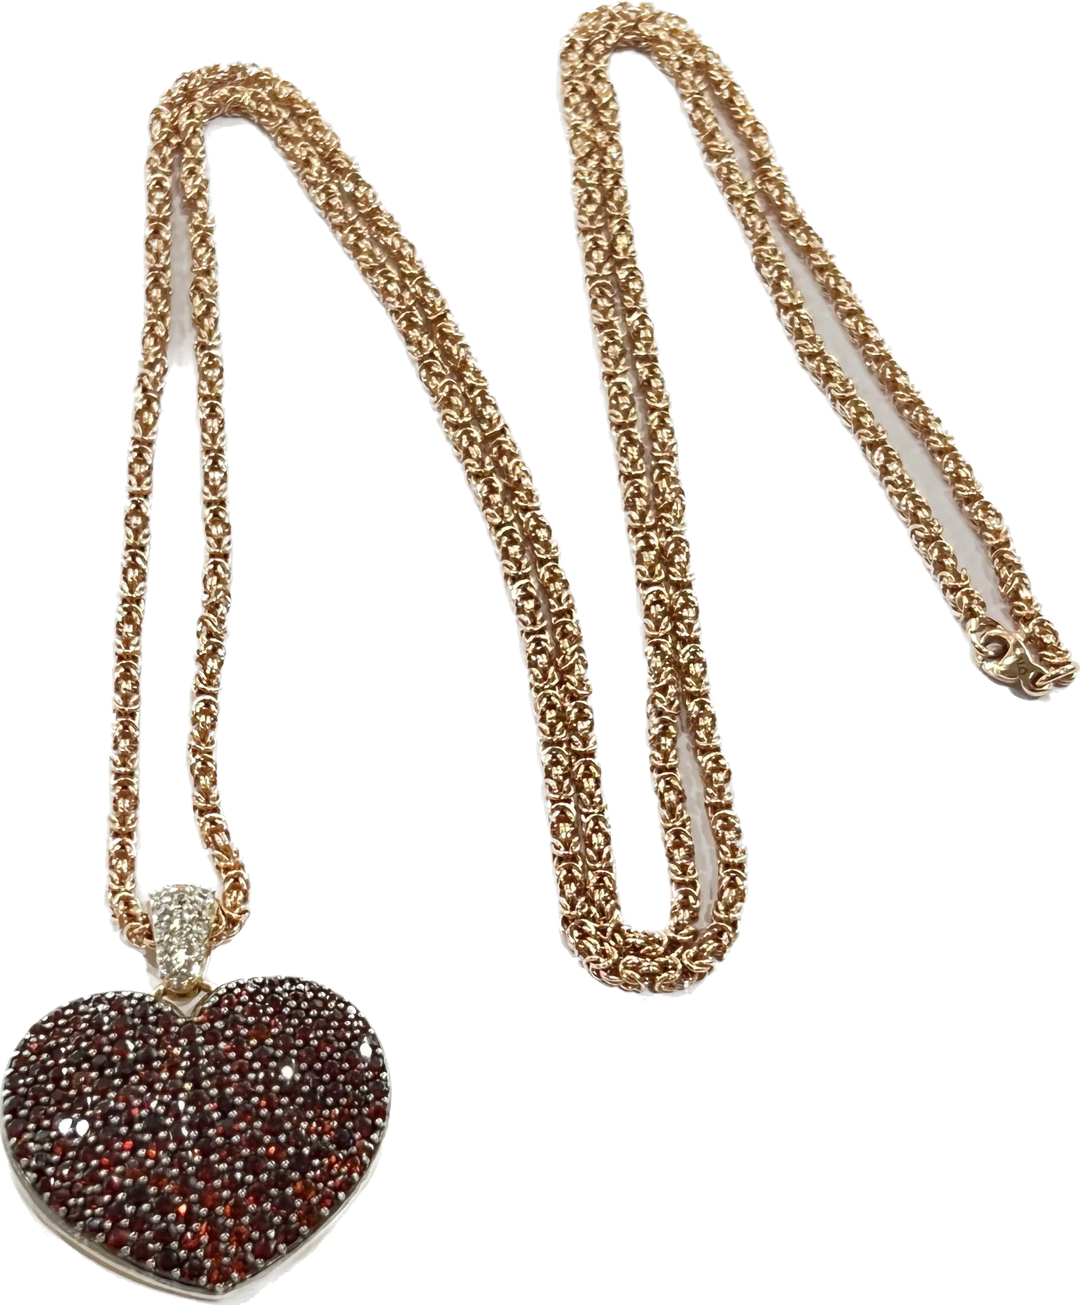 Sidalo Necklace Heart Silver 925 Finish Pvd Gold Rosa Granati M-4424